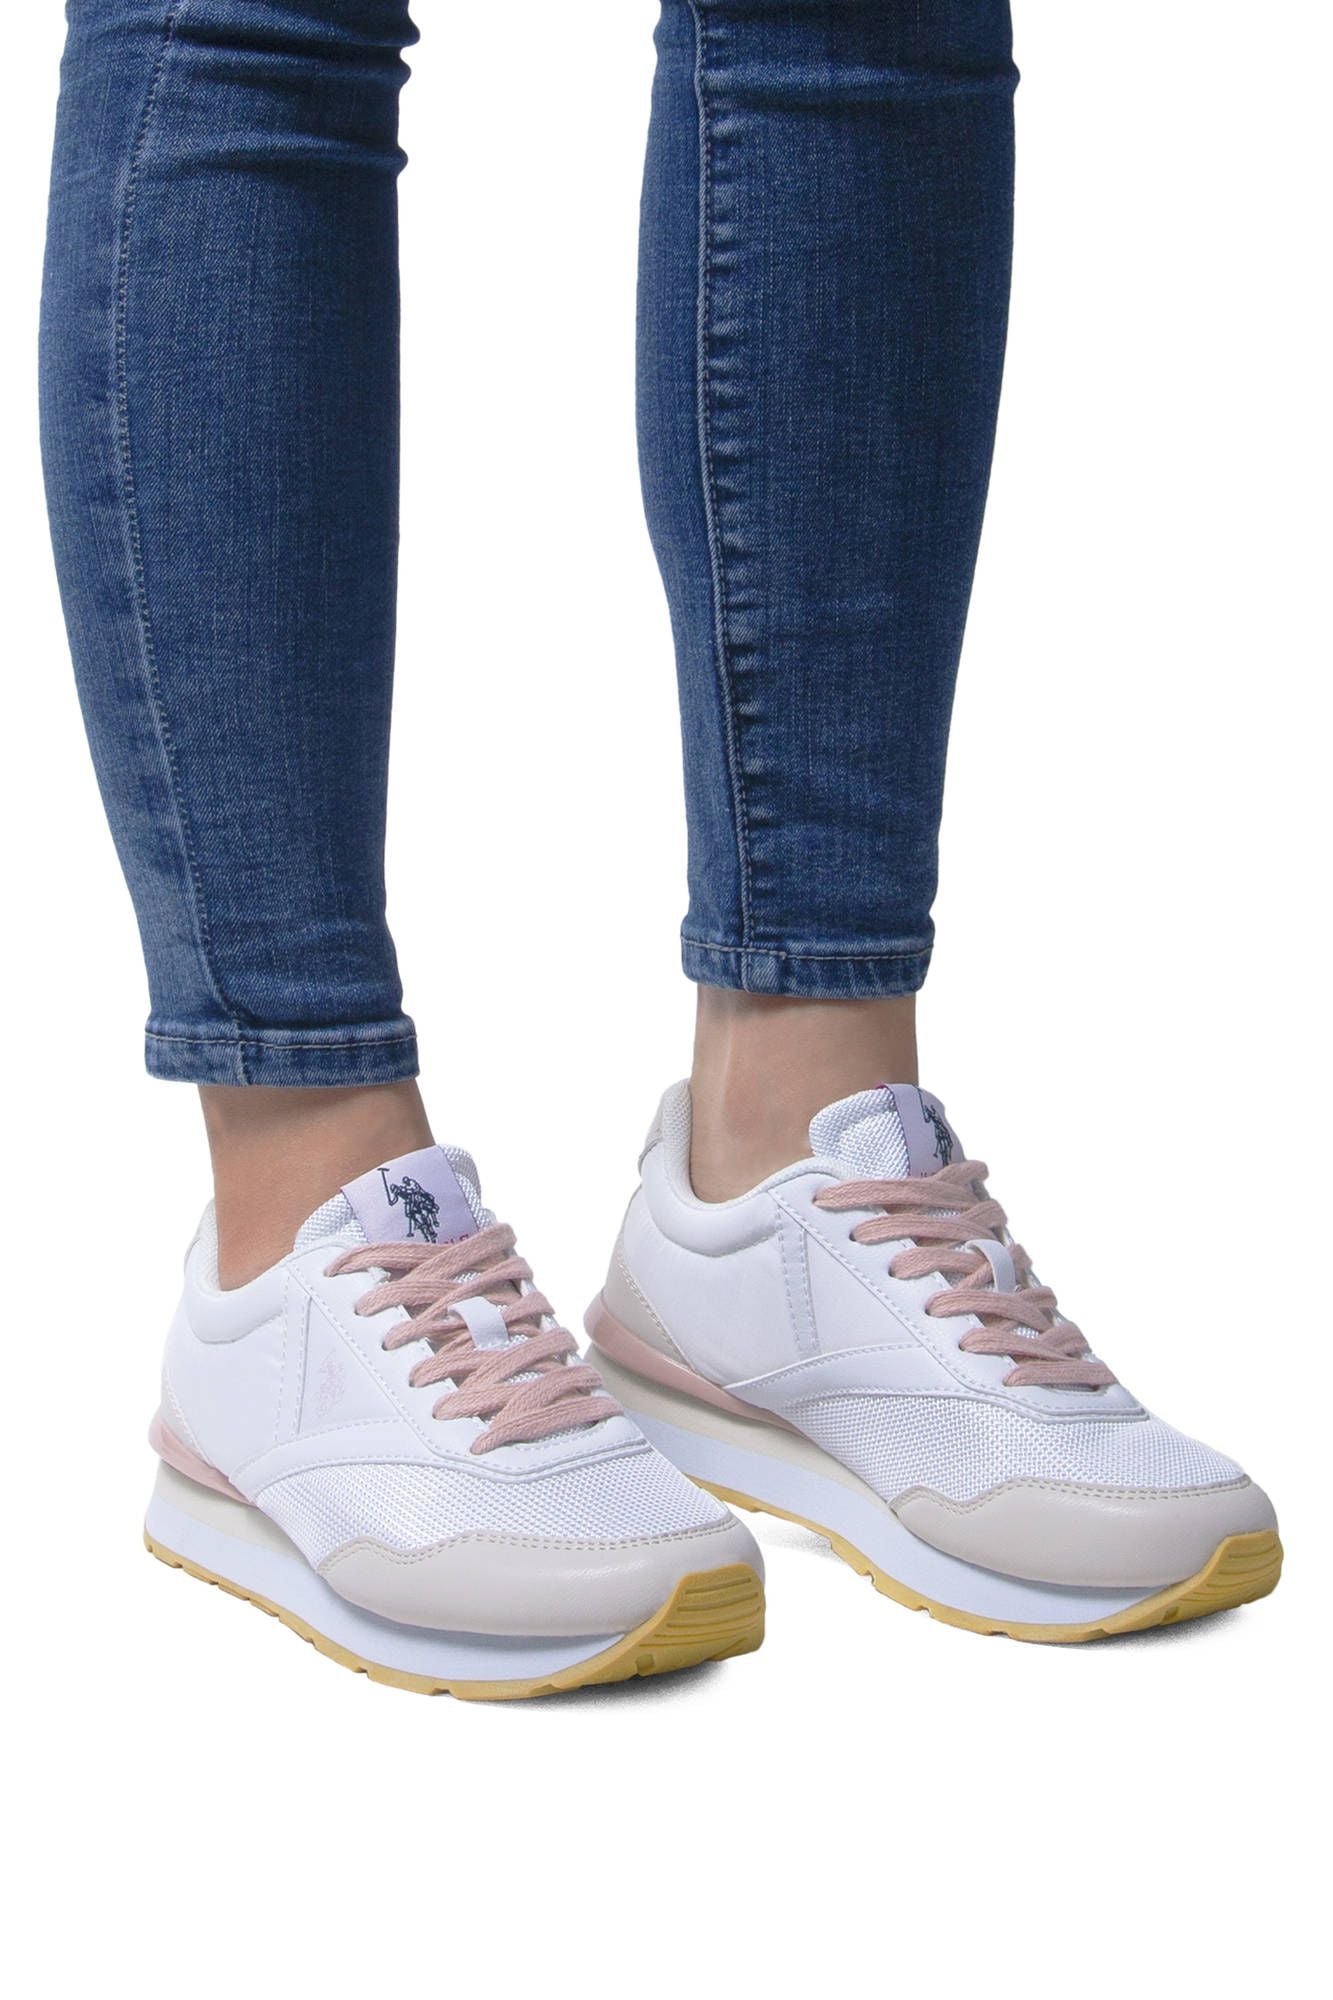 U.S. POLO ASSN. White Women Sneaker | Fashionsarah.com